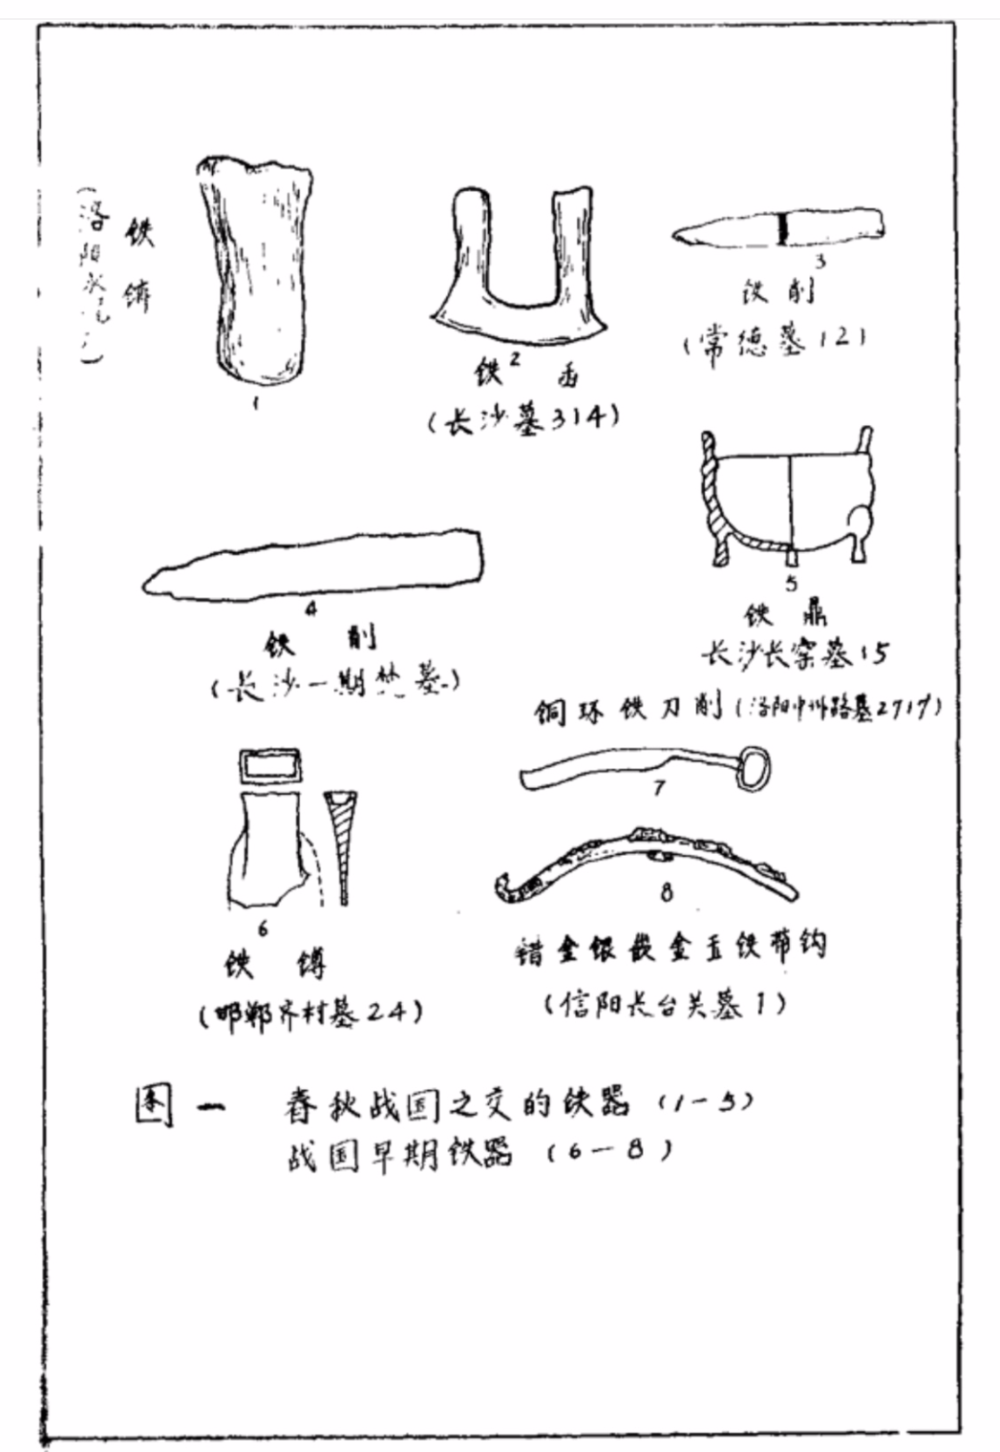 《战国秦汉考古》参考图（来源：ishare.iask.sina.com）<br>